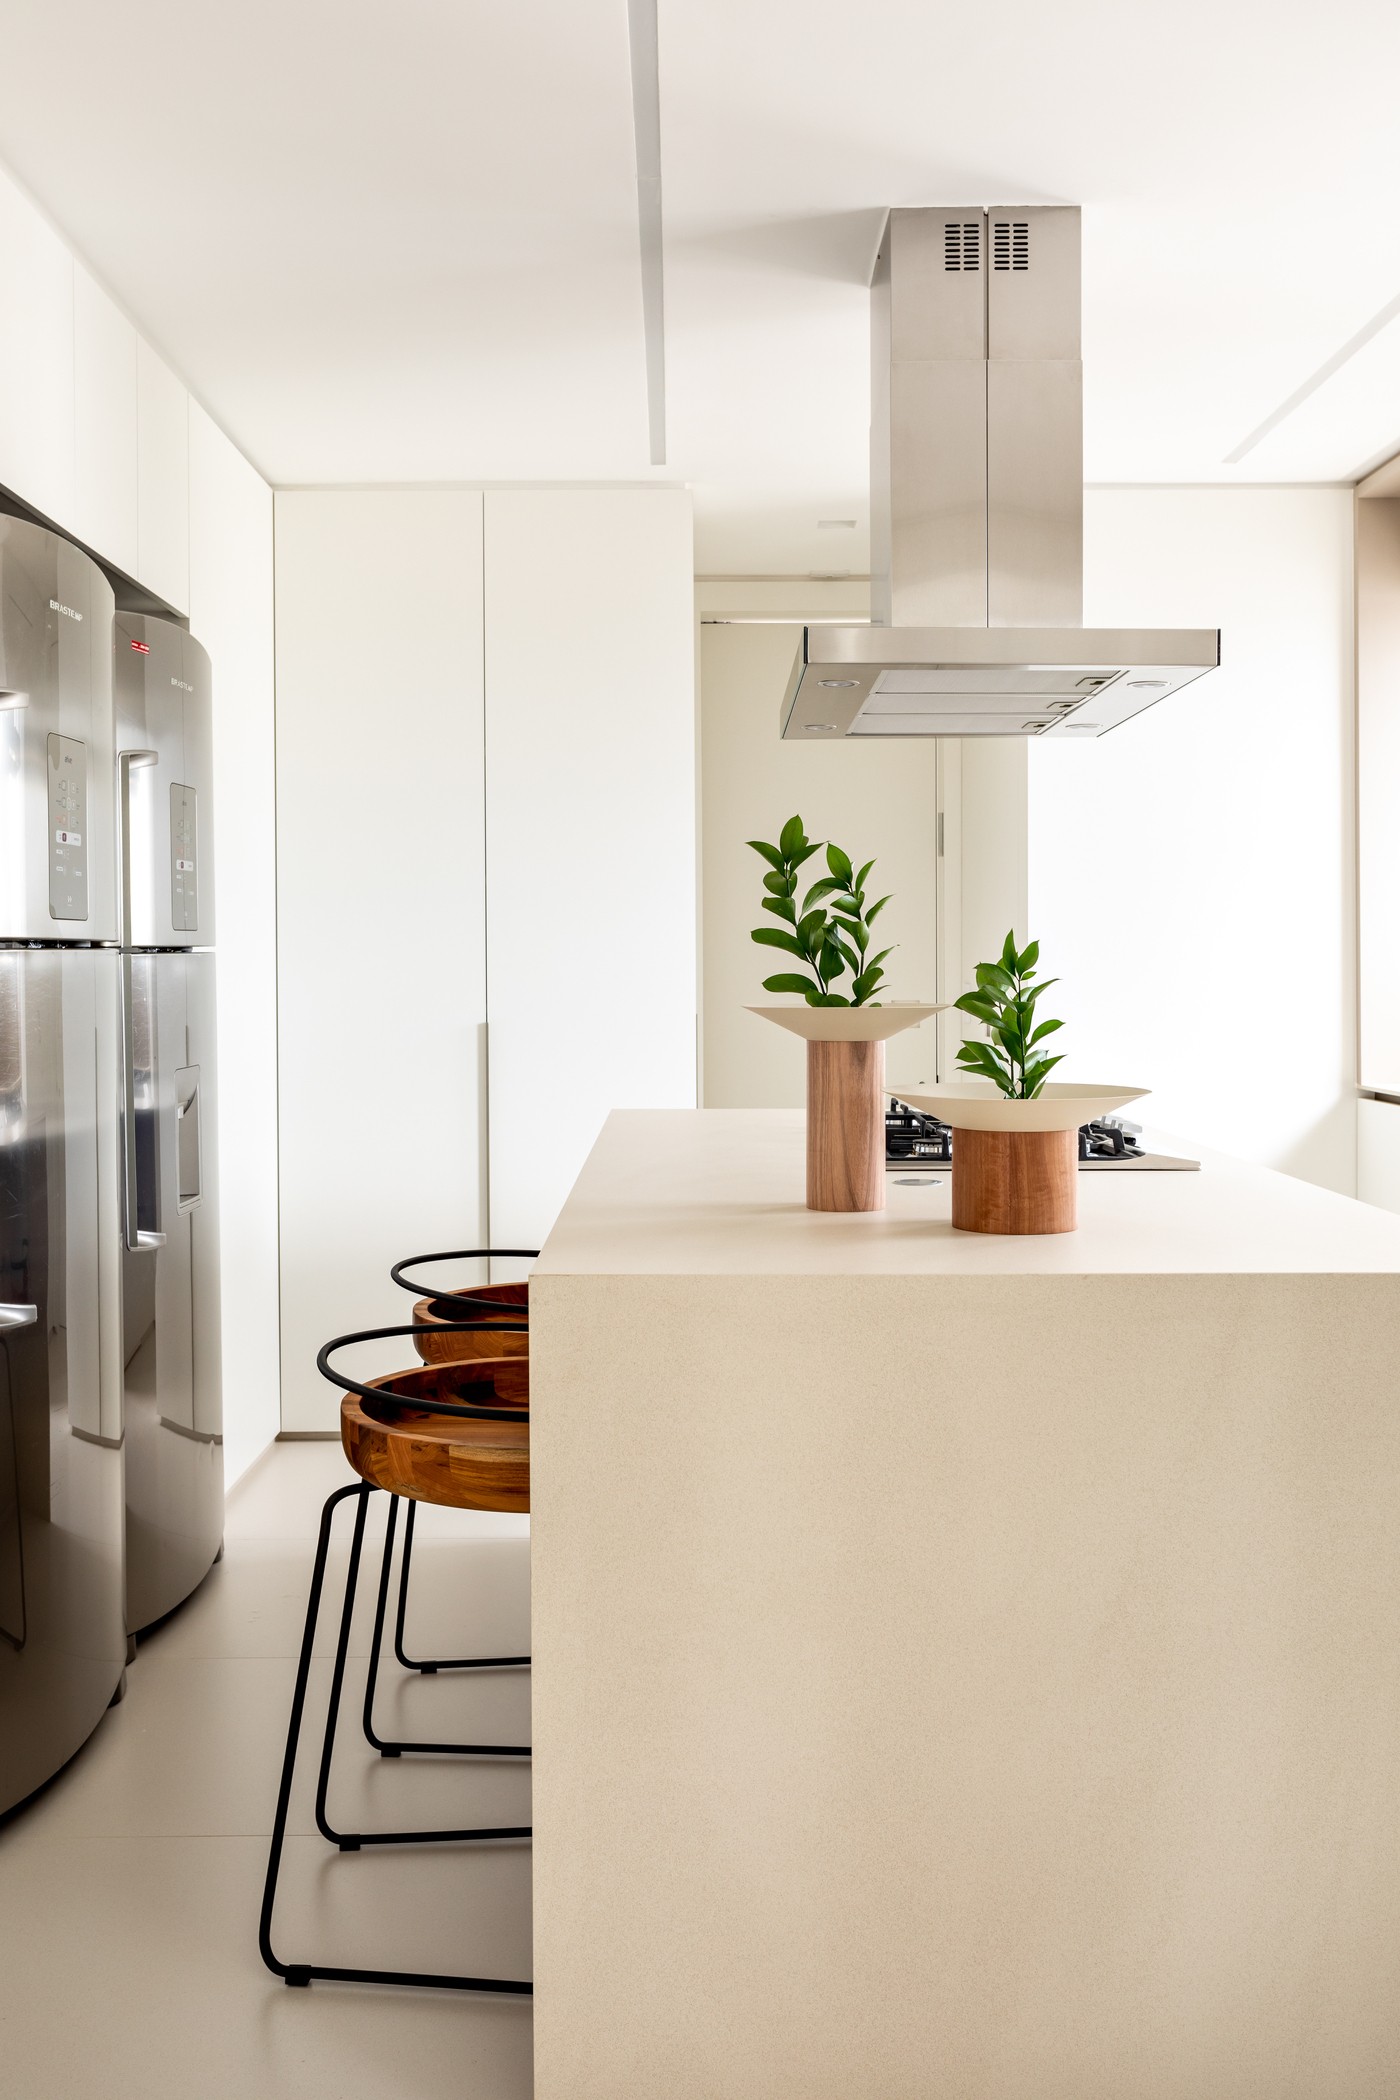 Décor do dia: cozinha minimalista com tons claros e ilha central (Foto: Fran Parente)